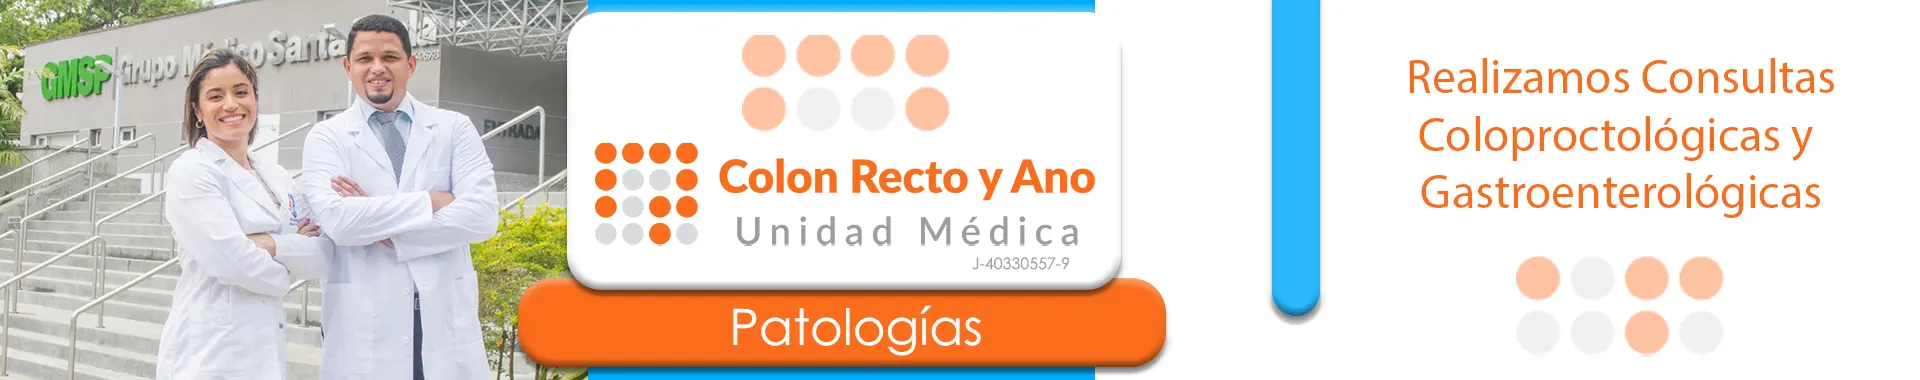 Imagen 4 del perfil de Colon Recto y Ano Unidad Médica